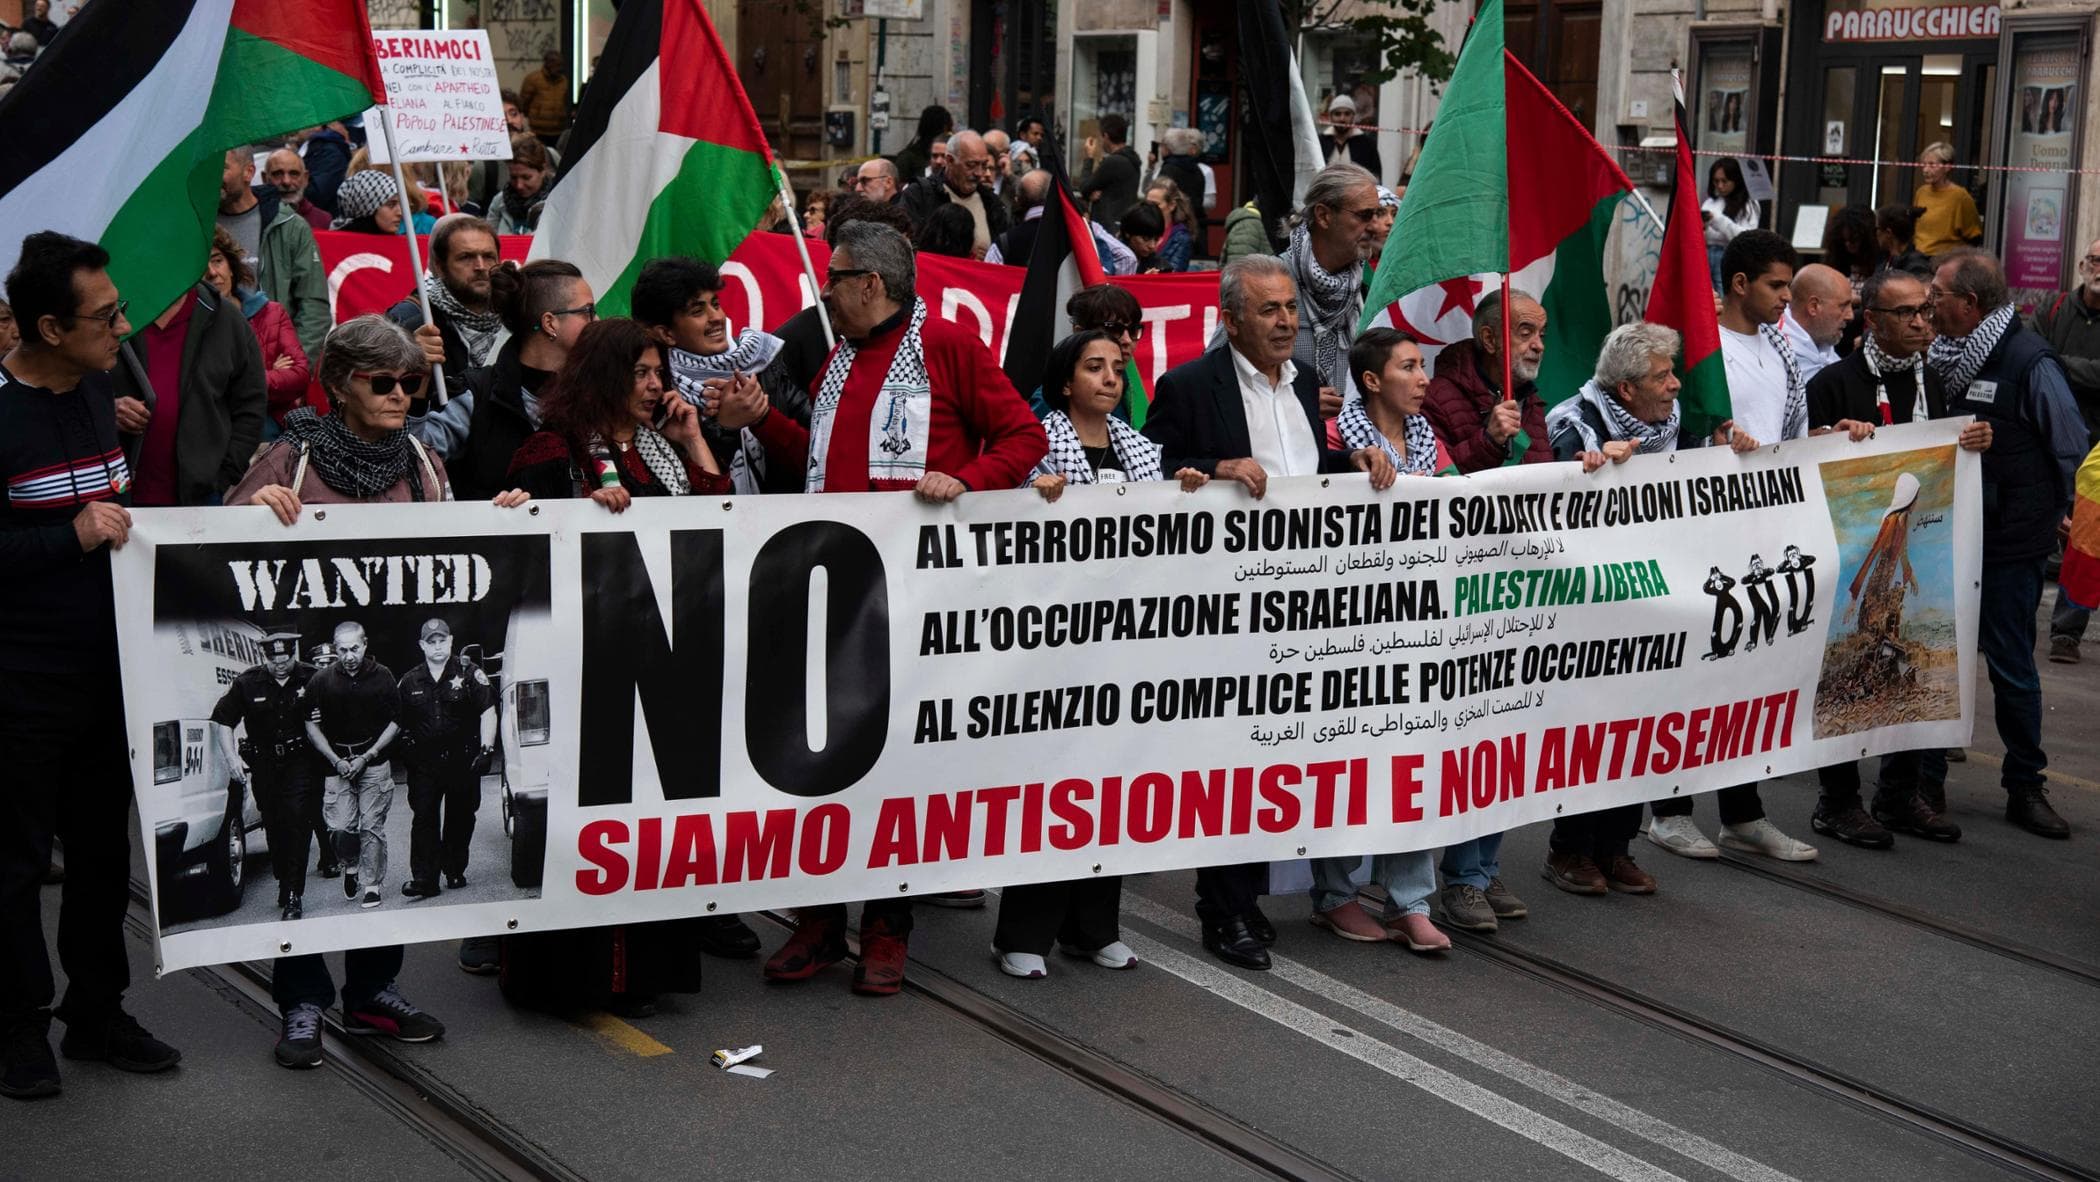 Accusare chi si oppone a Israele di essere antisemita impedisce il dialogo e alimenta l’odio